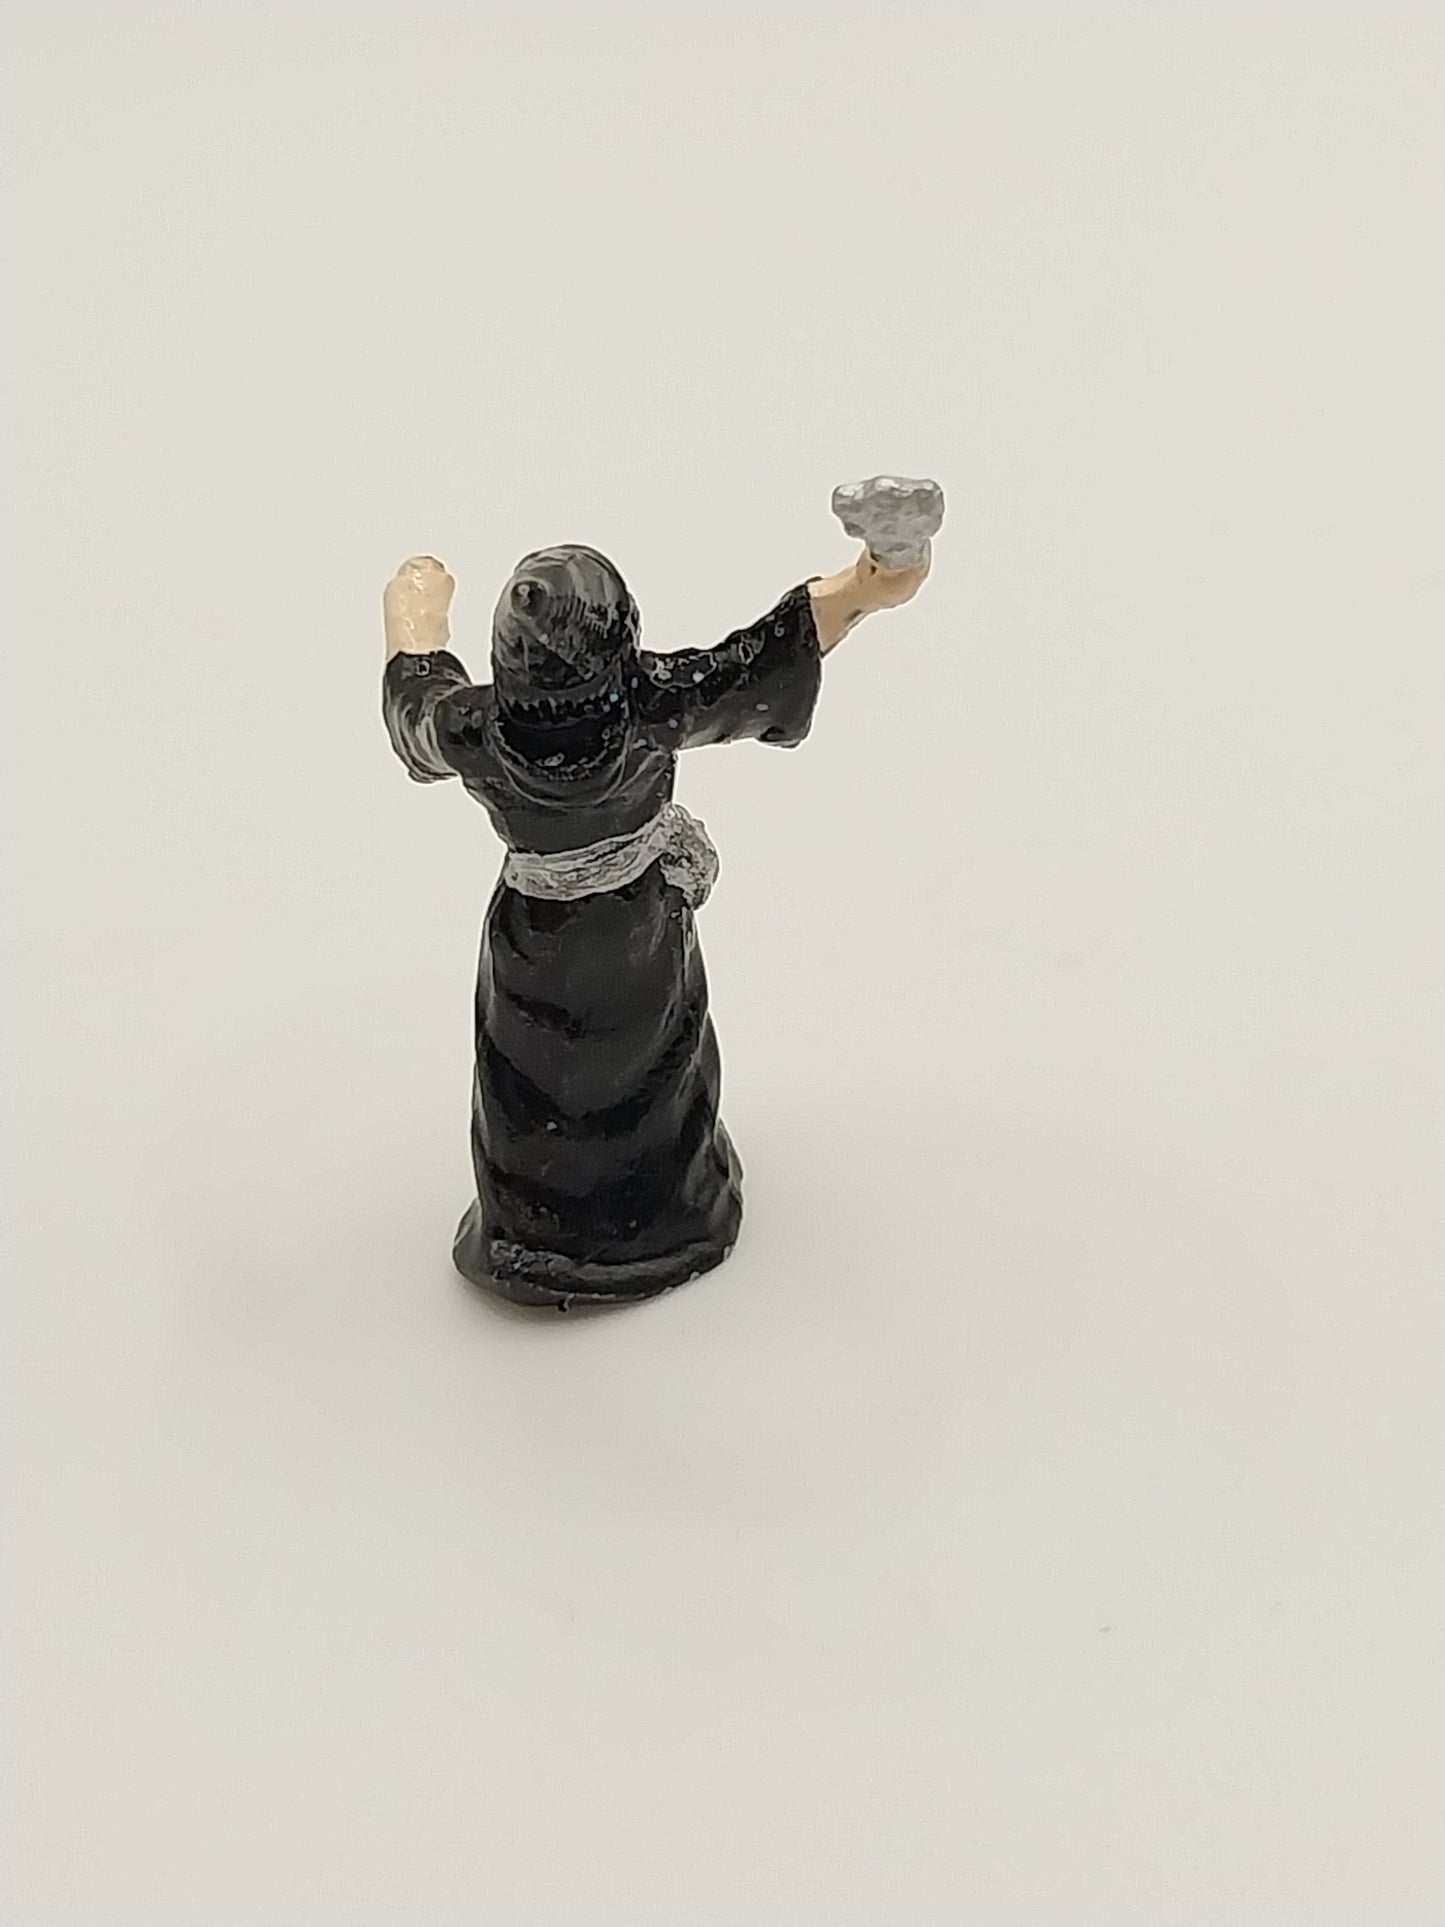 Wizard Figurine, Handpainted